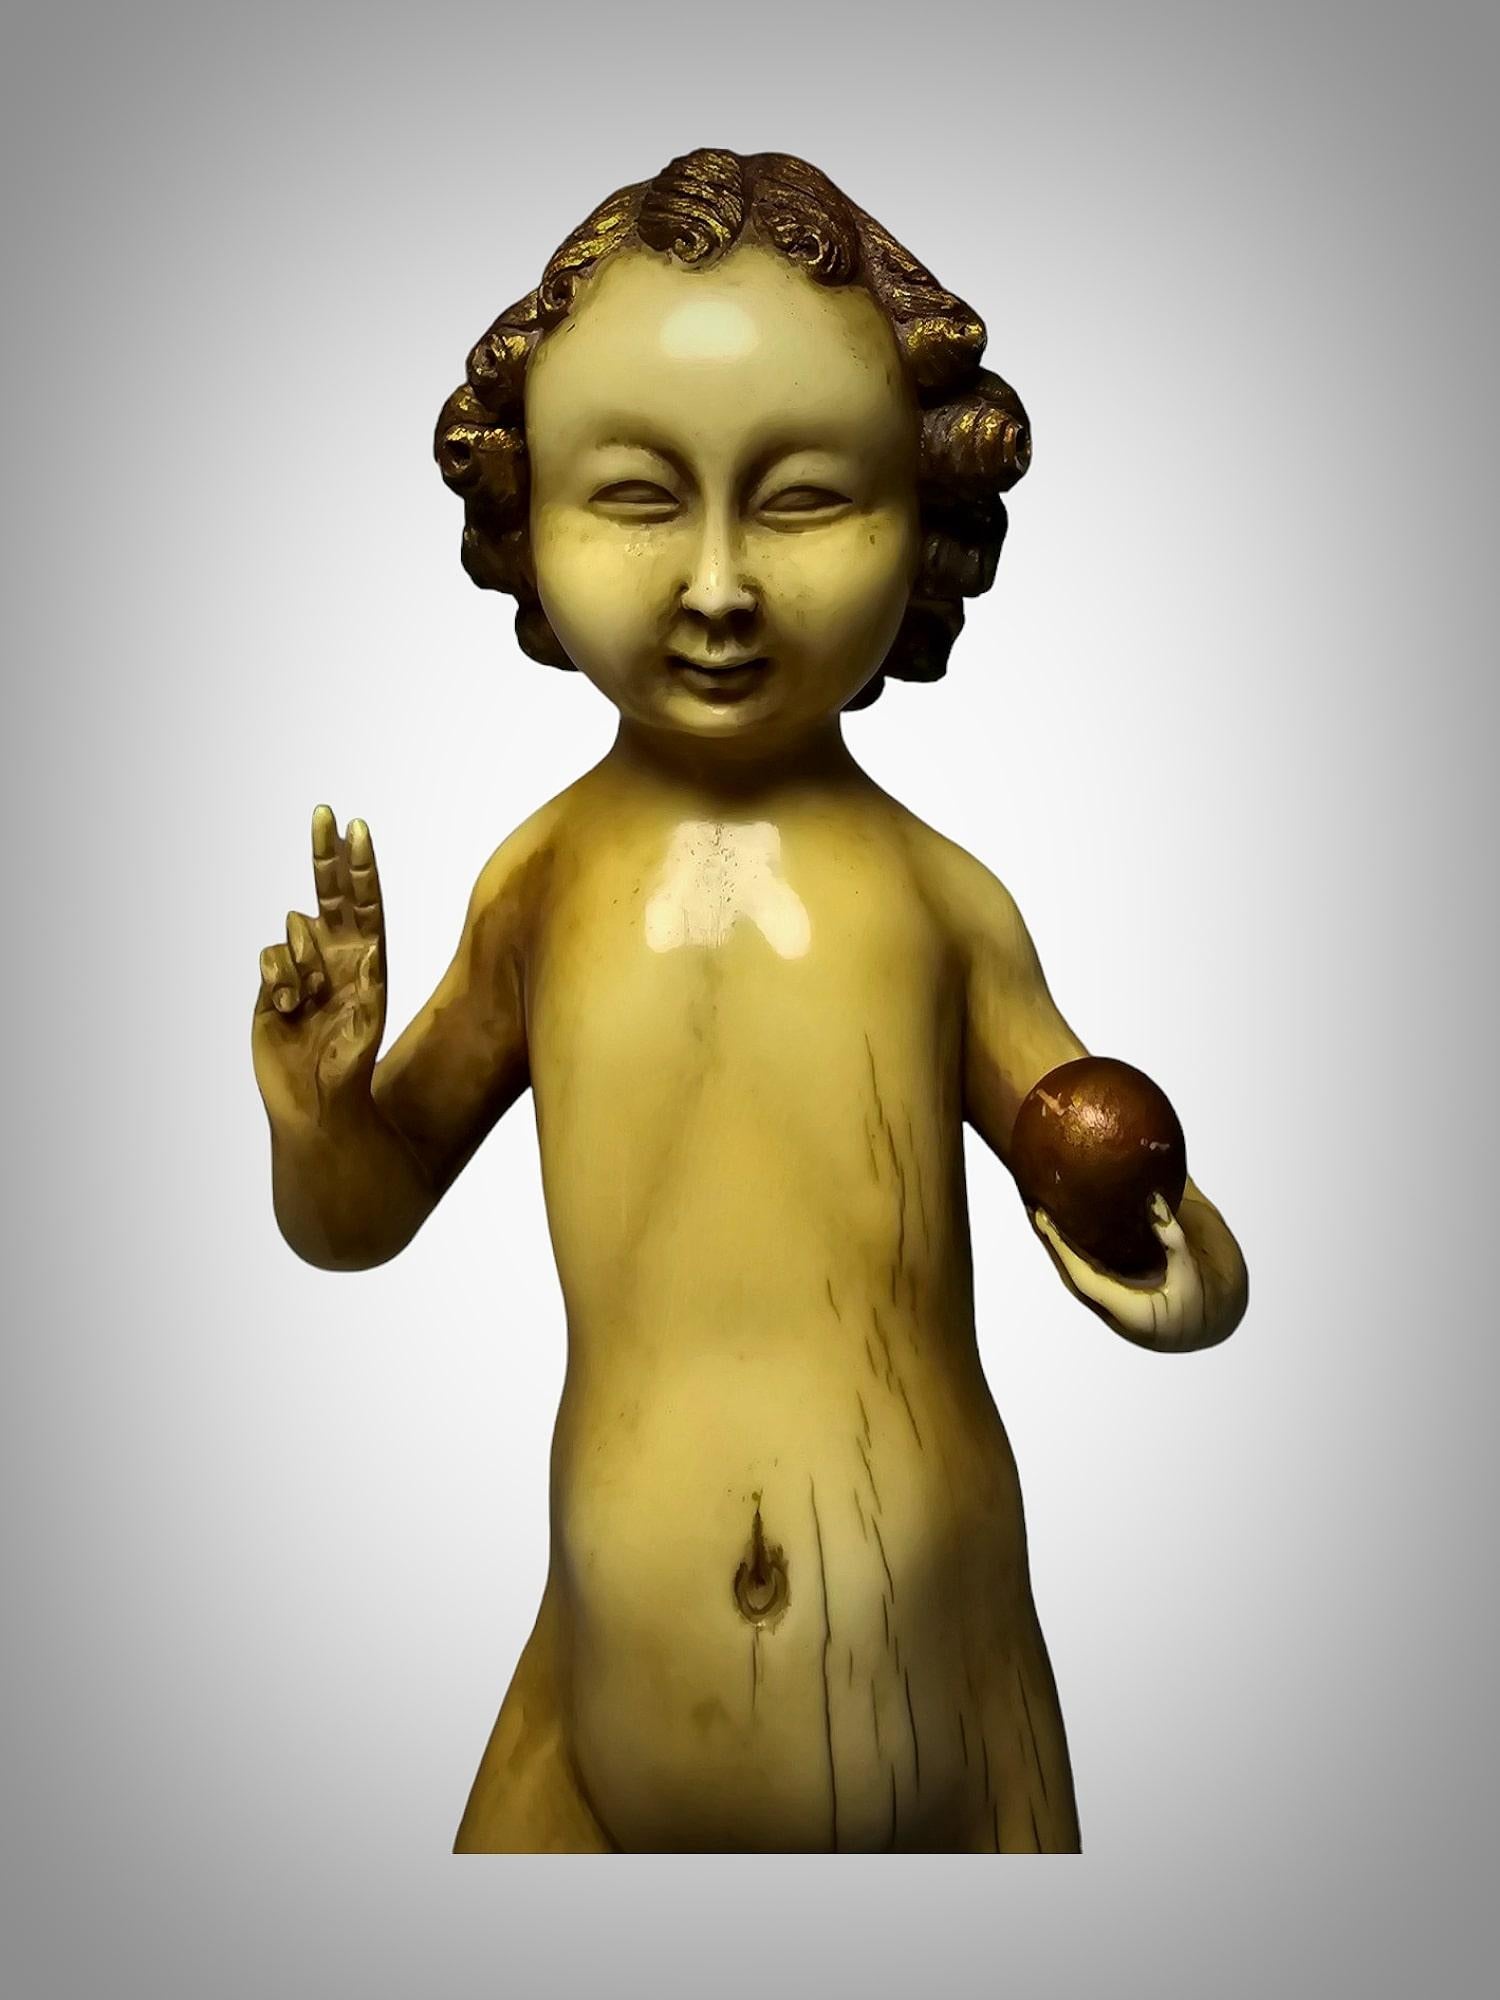 Plongez dans la beauté intemporelle de cette sculpture de l'Enfant Jésus en Salvator Mundi, une pièce exceptionnelle provenant de la célèbre école de Malines des XVe et XVIe siècles. Sculptée avec maîtrise et minutie, cette sculpture en ronde-bosse